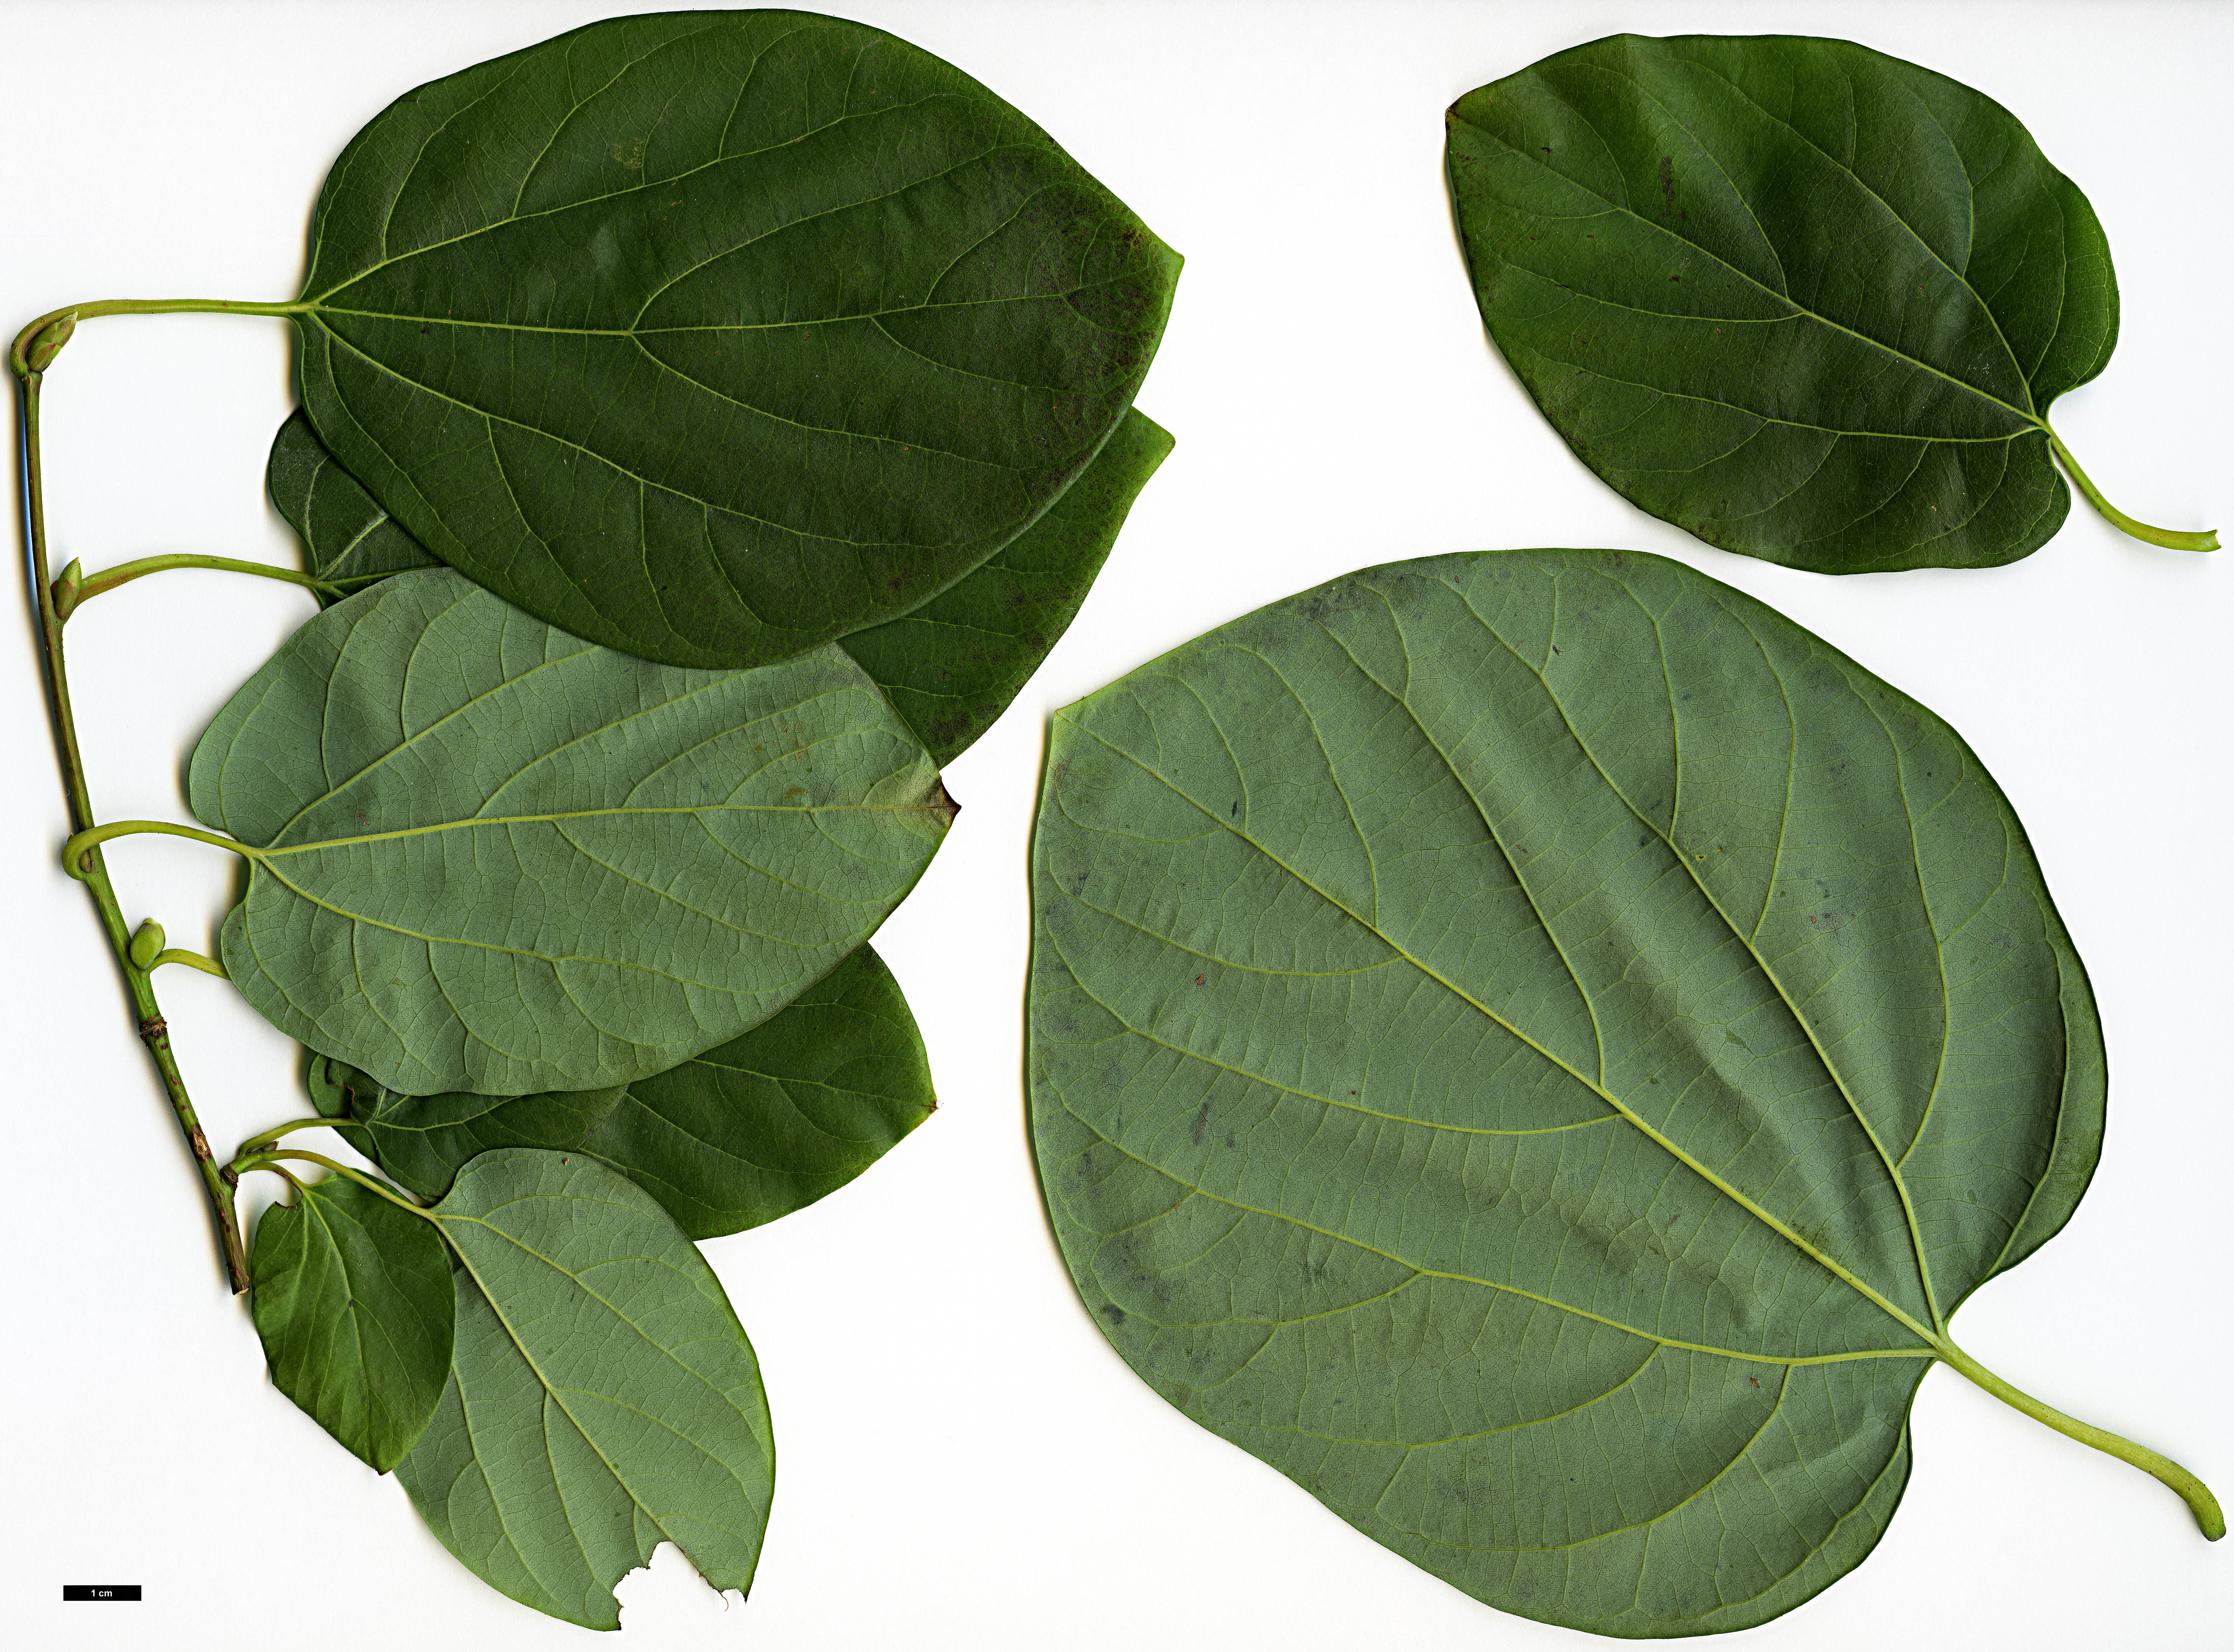 High resolution image: Family: Lauraceae - Genus: Lindera - Taxon: heterophylla